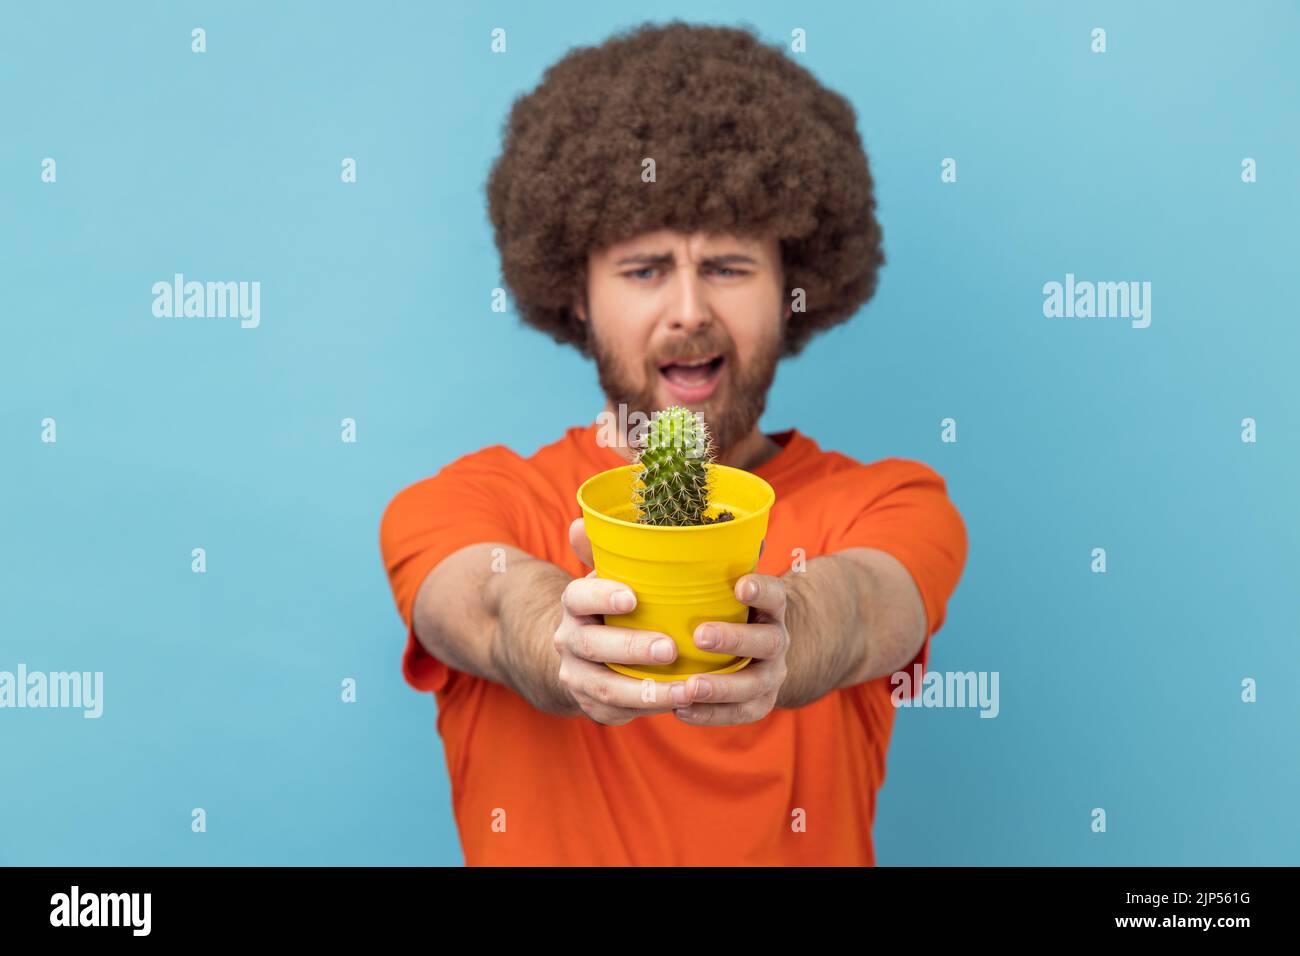 Ritratto dell'uomo con acconciatura afro che indossa una T-shirt arancione che sorregge il vaso di fiori gialli e il cactus, guardando la fotocamera con il volto accigliato. Studio in interni isolato su sfondo blu. Foto Stock